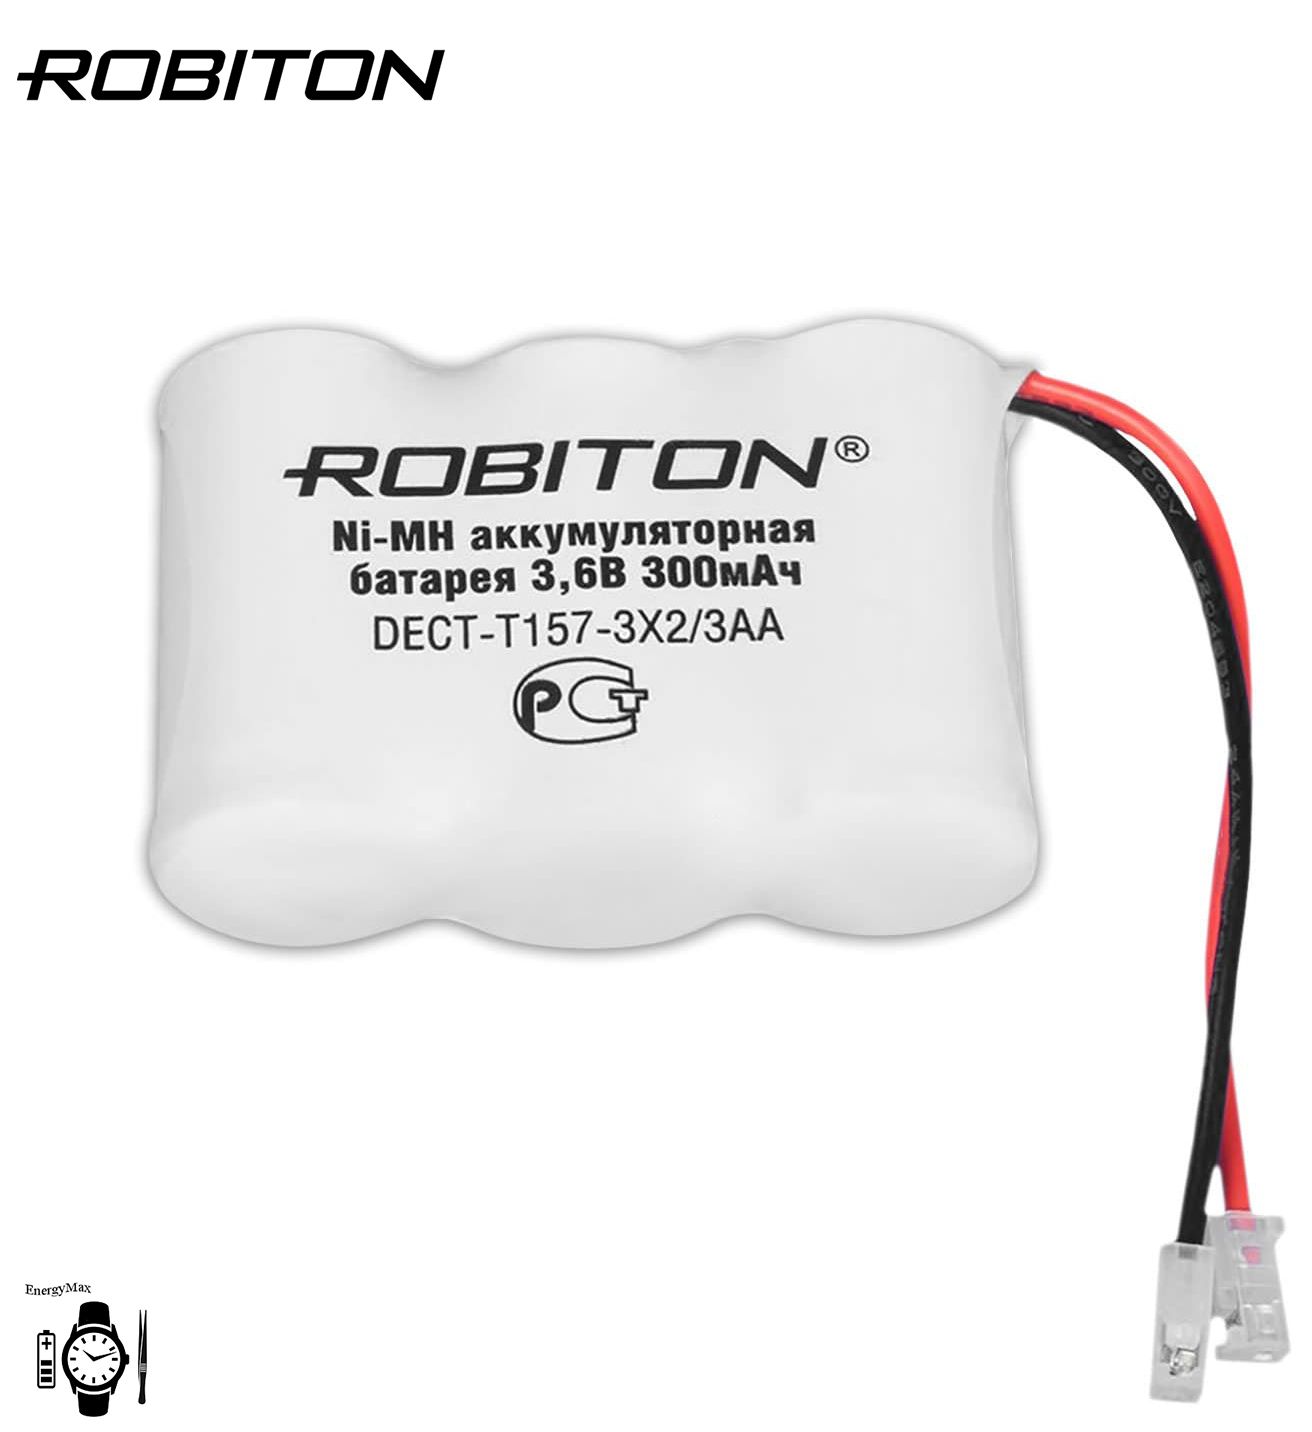 Купить аккумулятор для радиотелефона. Аккумулятор Robiton DECT-t157. Аккумулятор Robiton DECT-t279. Аккумулятор для радиотелефона t157. Robiton аккумуляторы 3.6v.